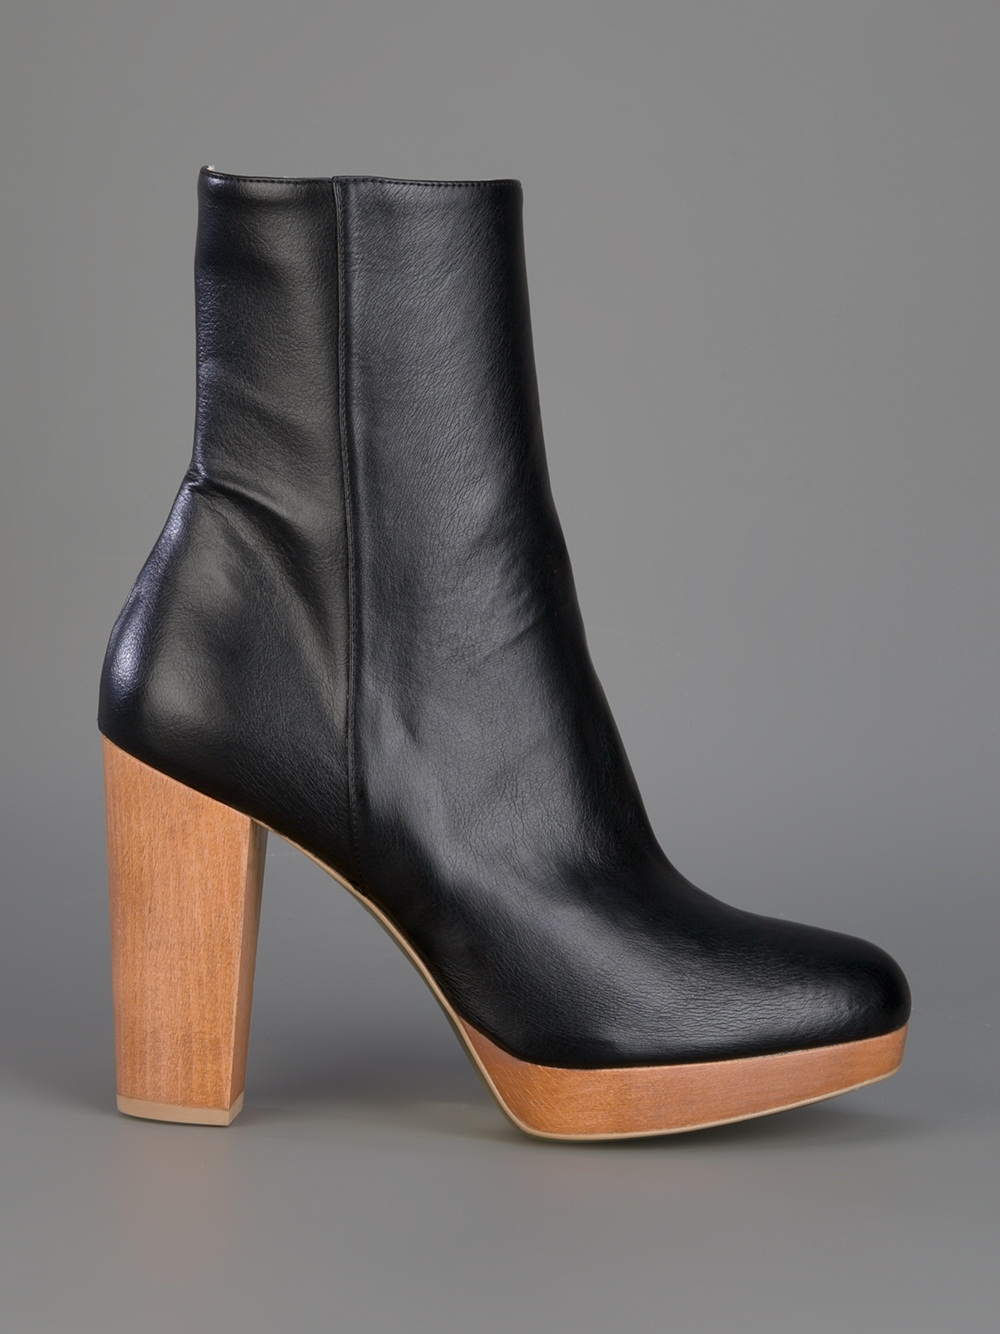 Stella McCartney Wooden Heel Boots in Black - Lyst